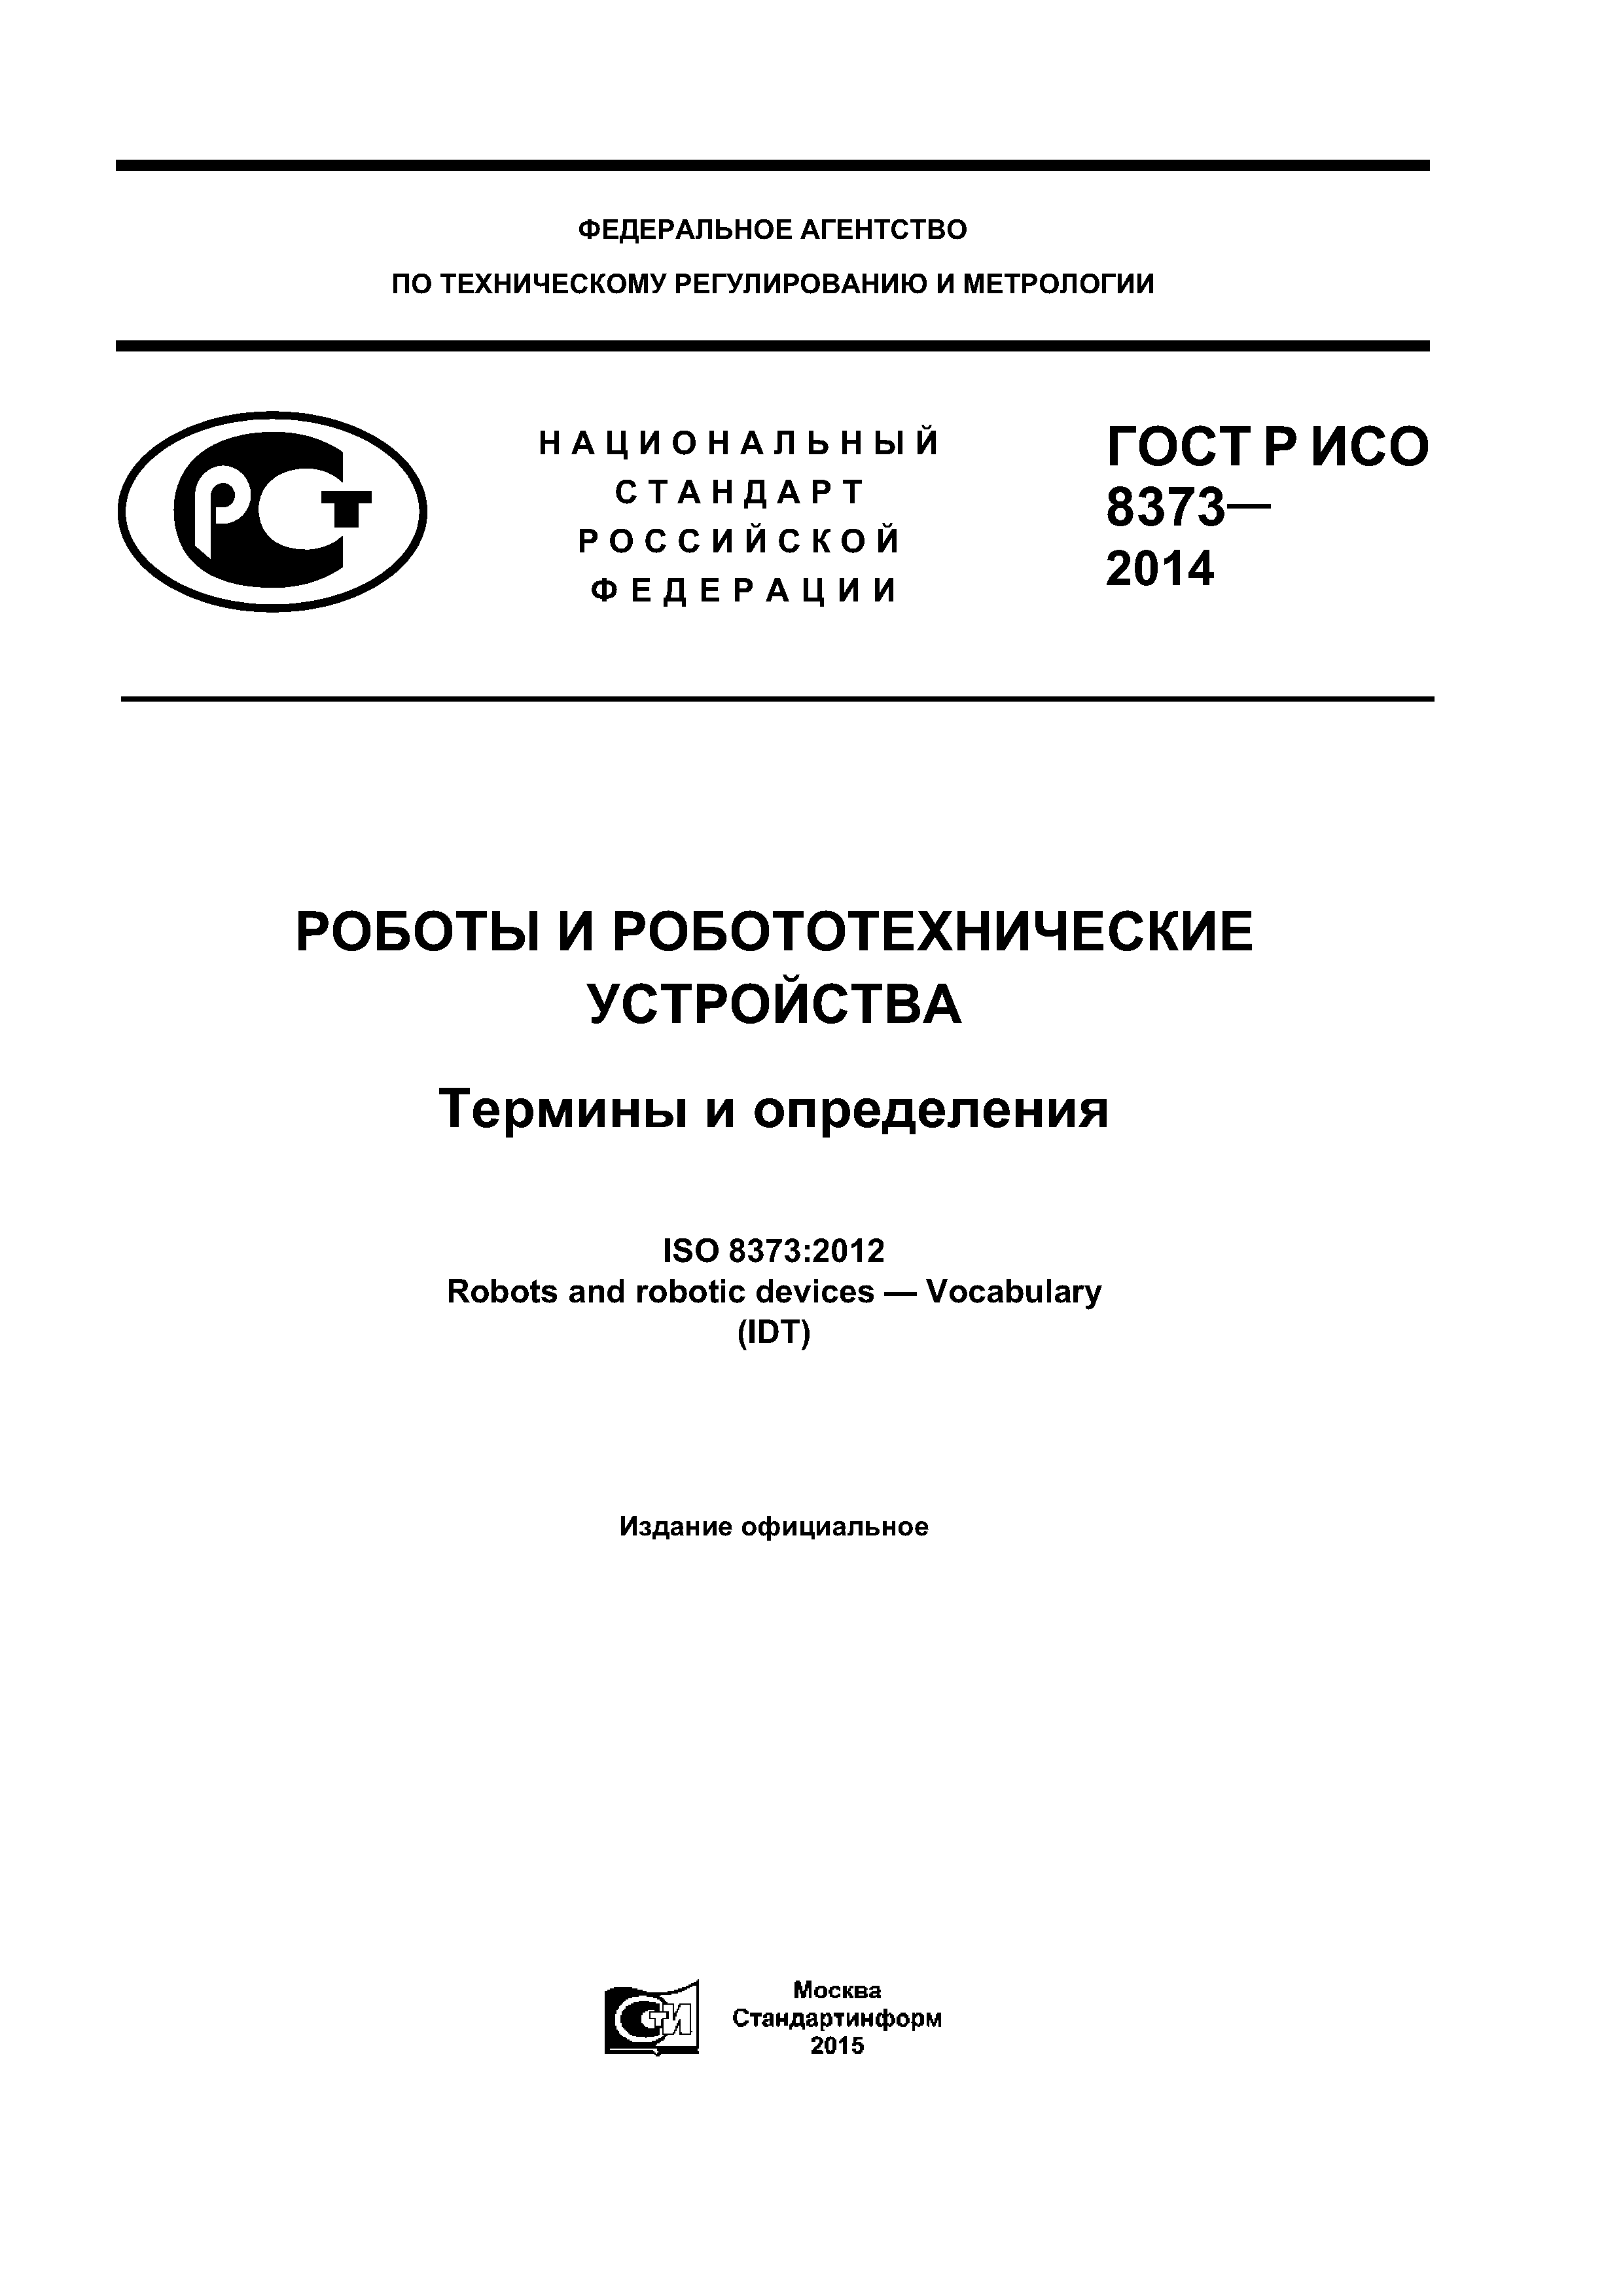 ГОСТ Р ИСО 8373-2014